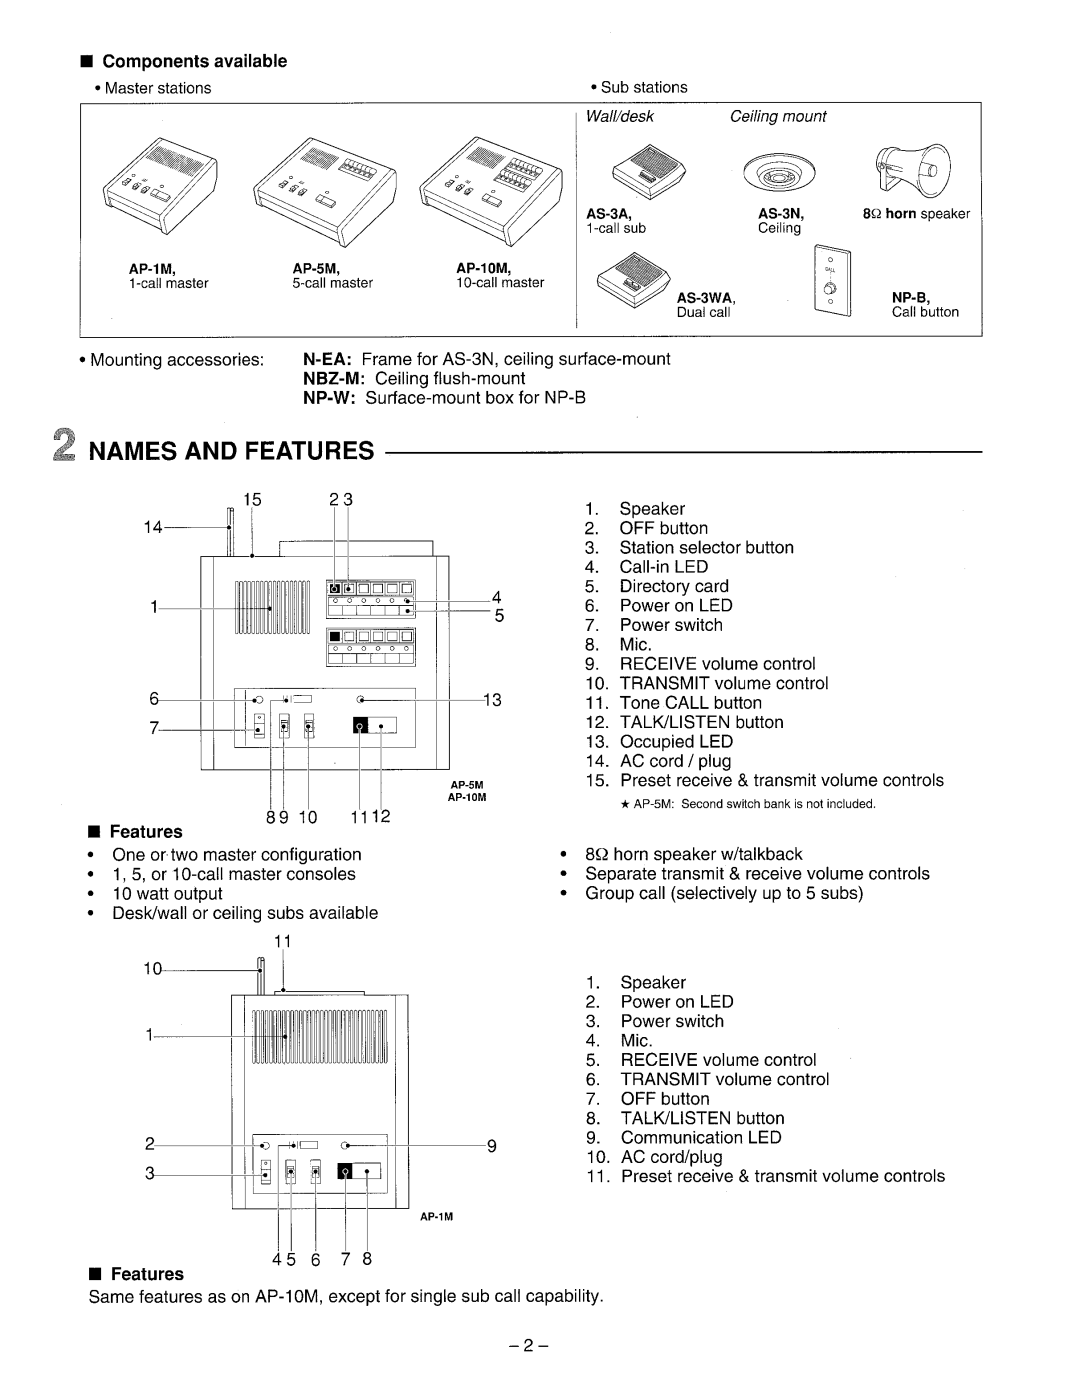 Aiphone AP-1M, Ap-5m, AP-10M manual 